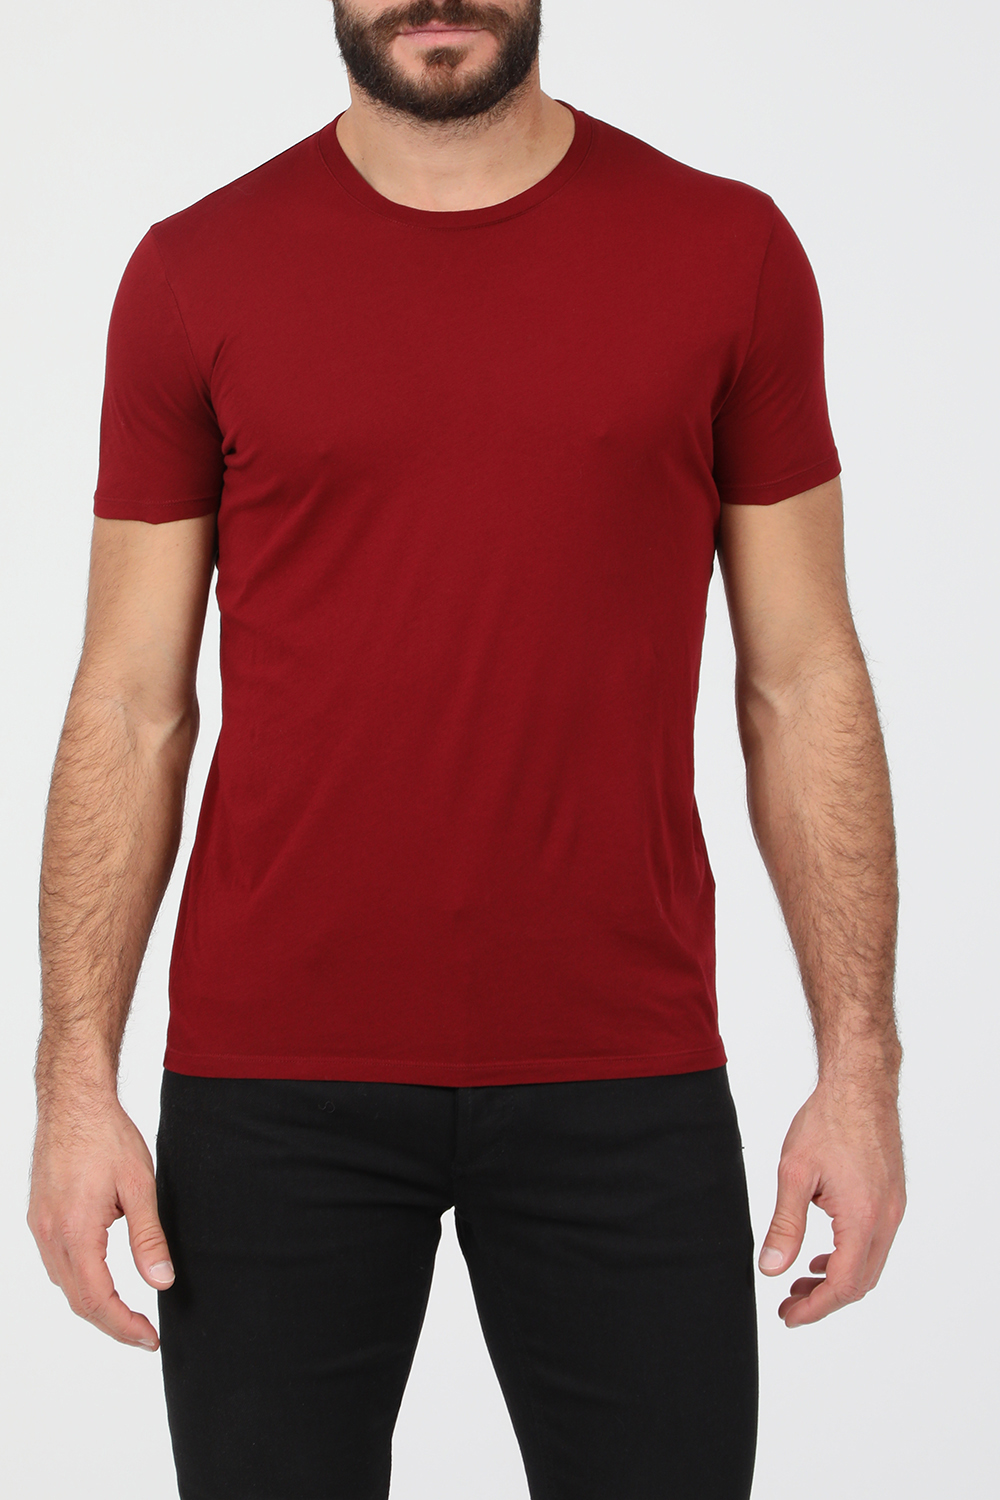 Ανδρικά/Ρούχα/Μπλούζες/Κοντομάνικες AMERICAN VINTAGE - Ανδρικό t-shirt AMERICAN VINTAGE μπορντό